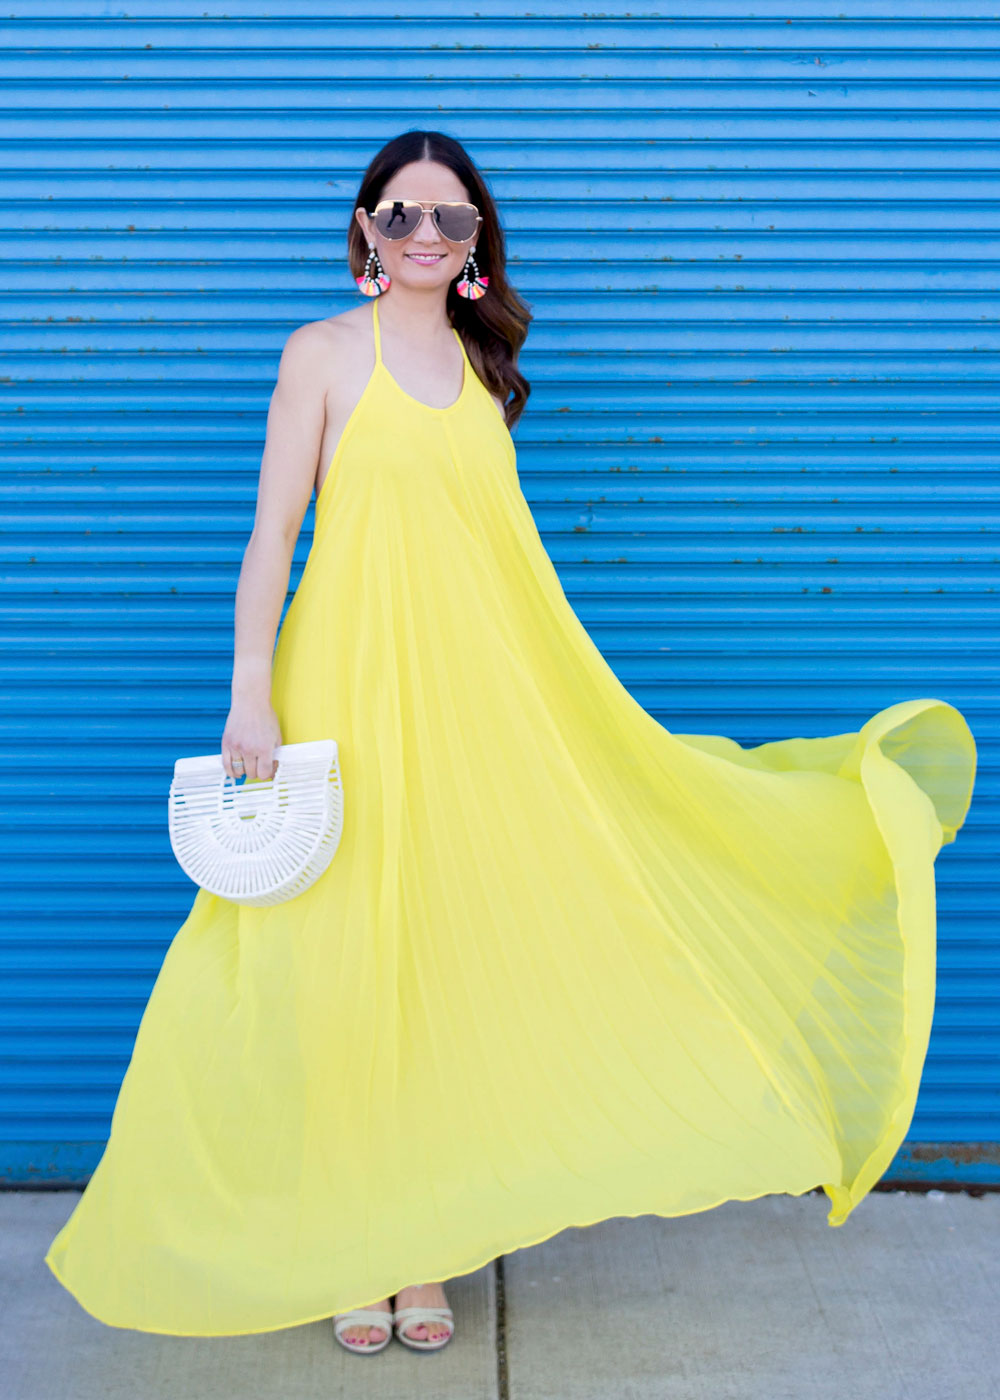 ASOS Yellow Halter Maxi Dress